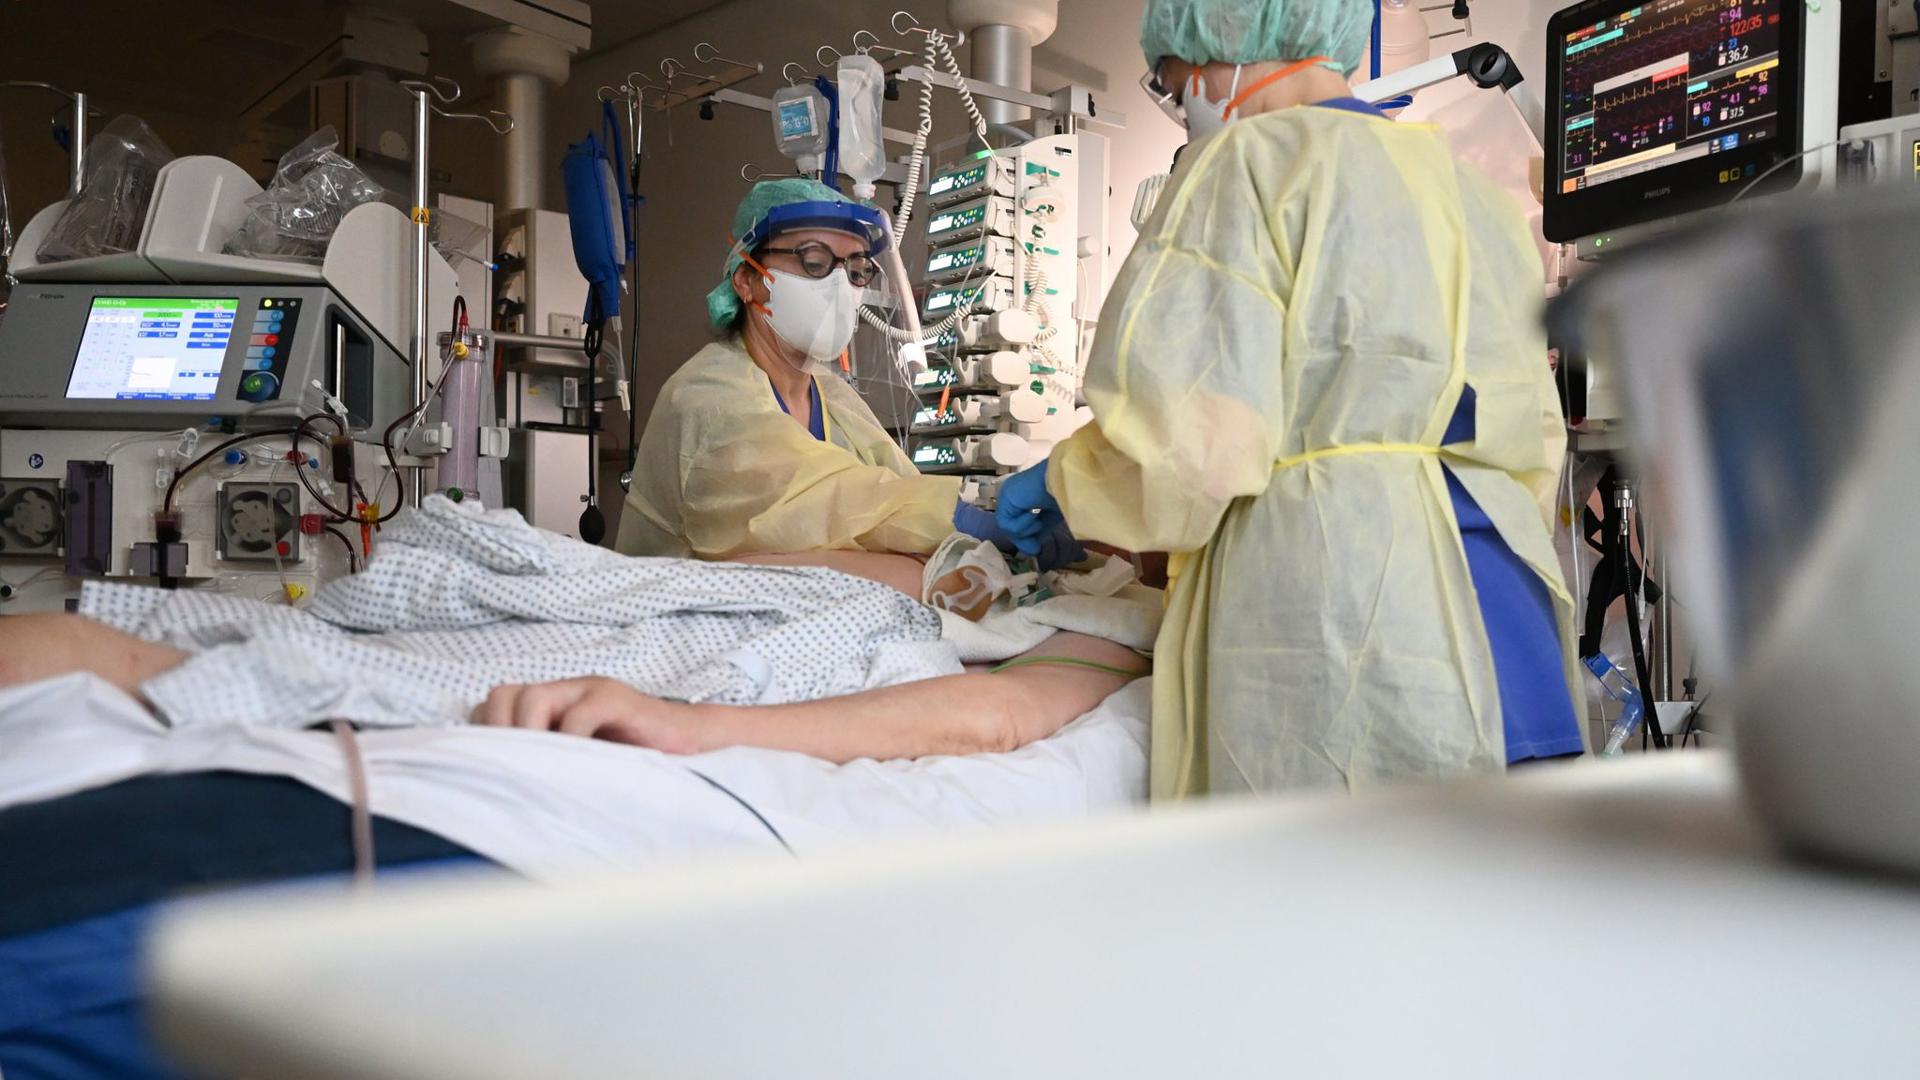 Ein Patient in Baden-Württemberg ist nach einer zweiten Corona-Infektion gestorben.